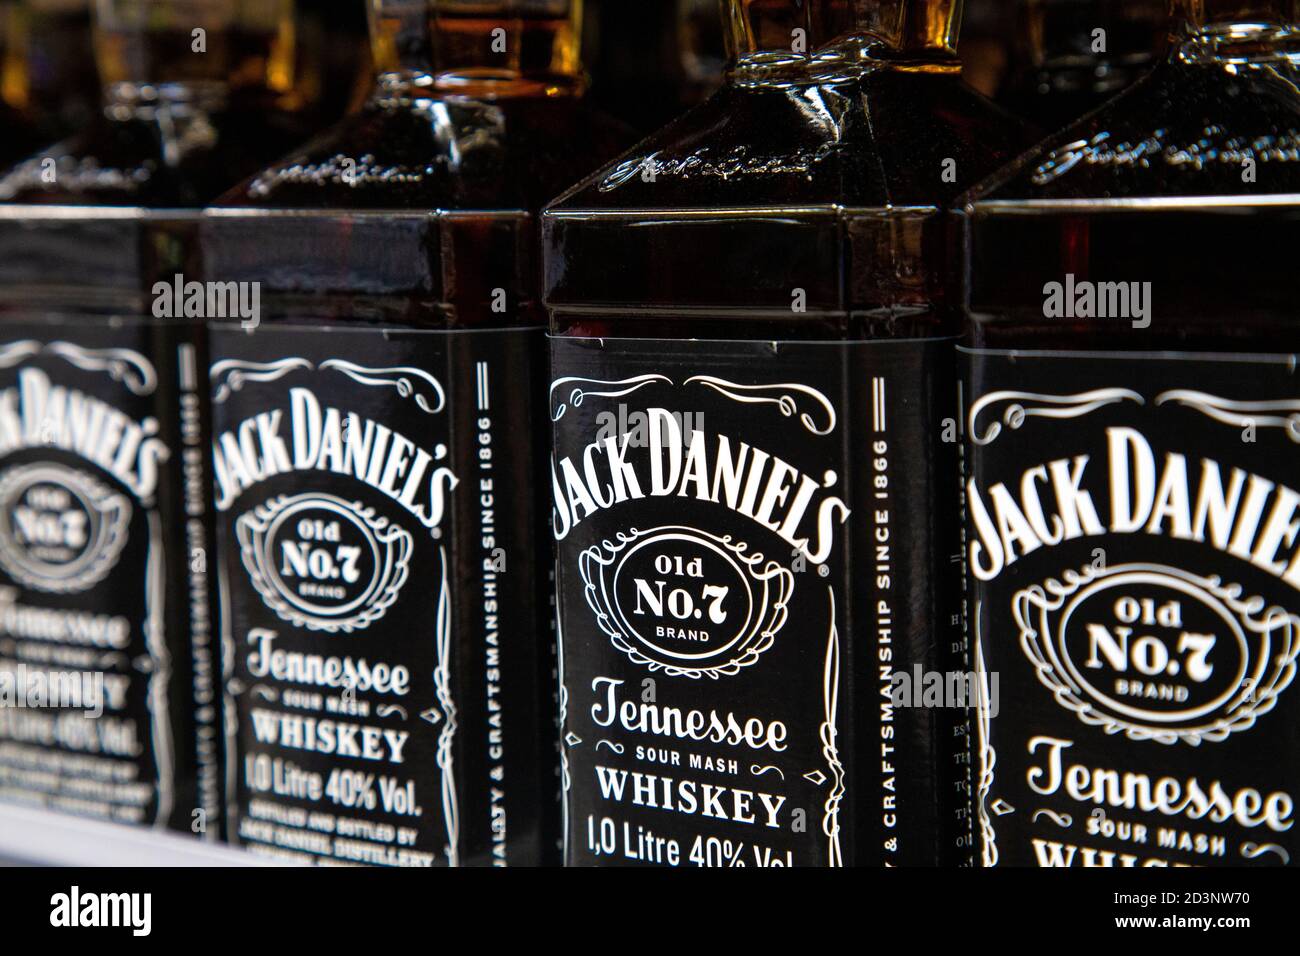 Bouteilles de Jack Daniels No. 7 Tennessee Whiskey dans un supermarché Banque D'Images